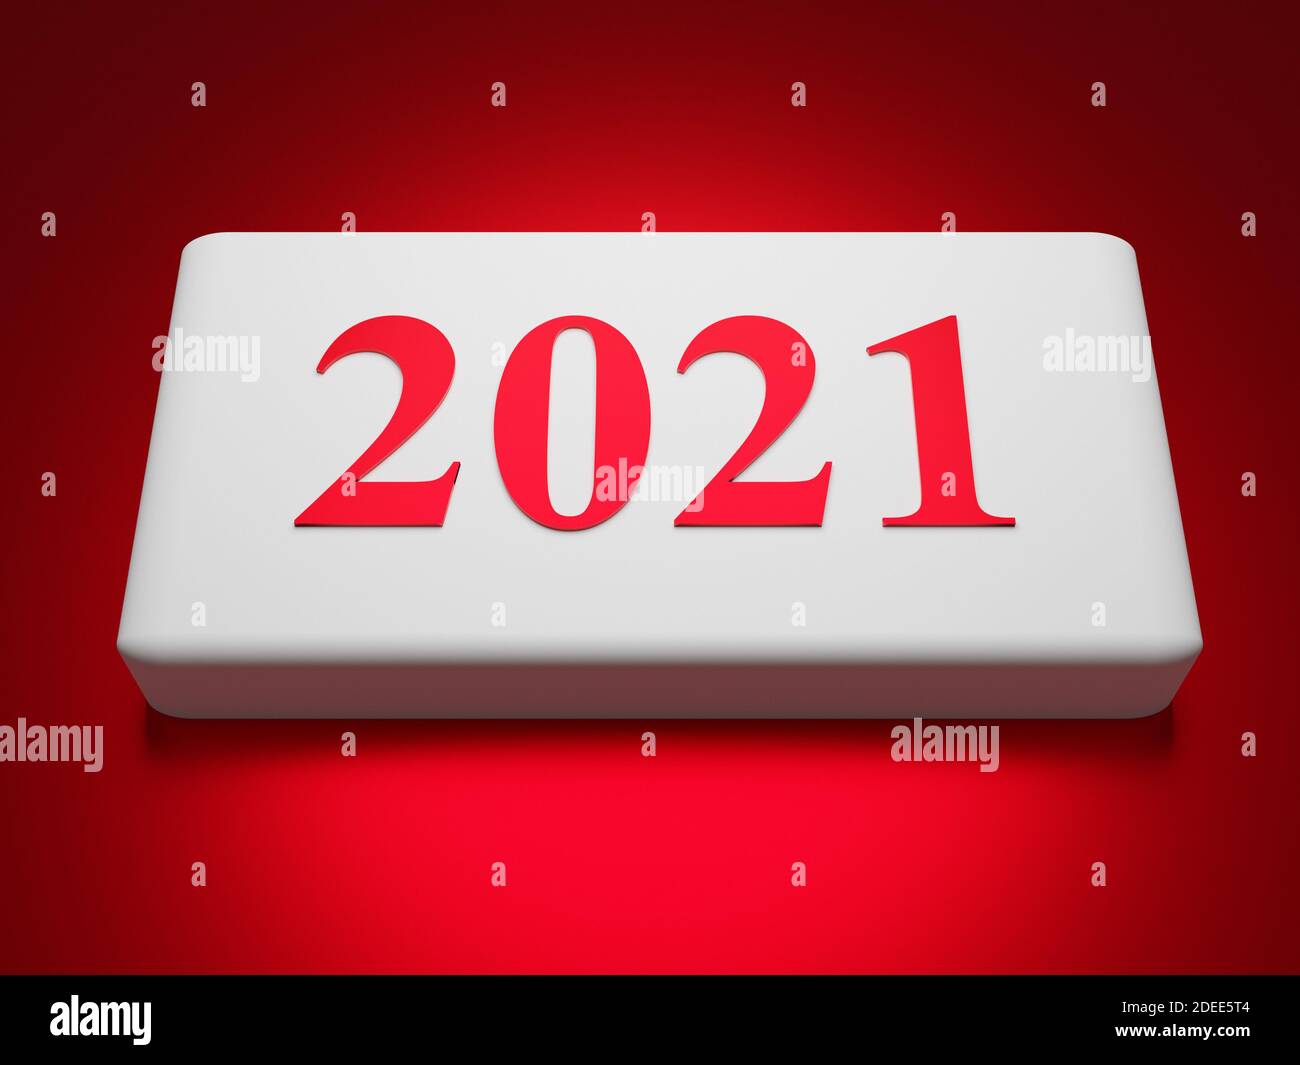 Knopf mit der Nummer 2021 auf rotem Hintergrund. Konzept für das neue Jahr. 3d-Rendering Stockfoto